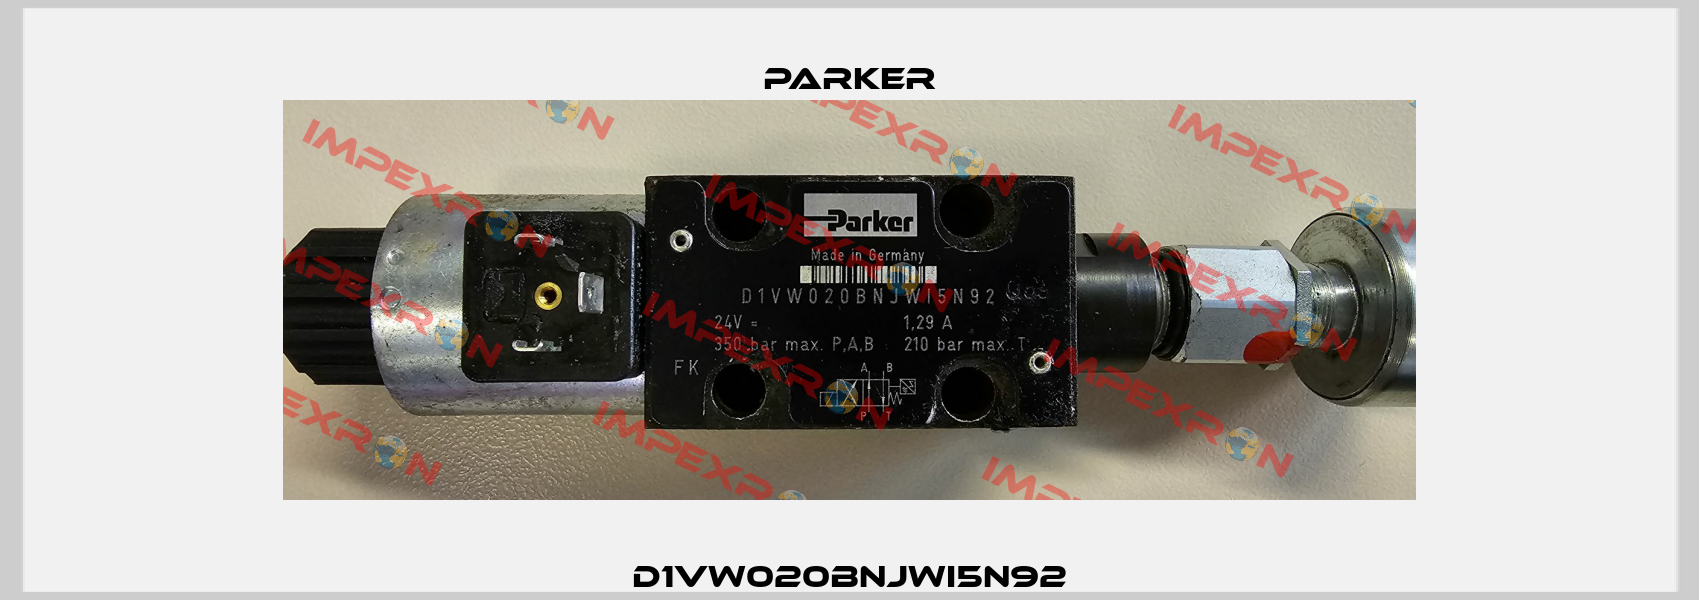 D1VW020BNJWI5N92 Parker